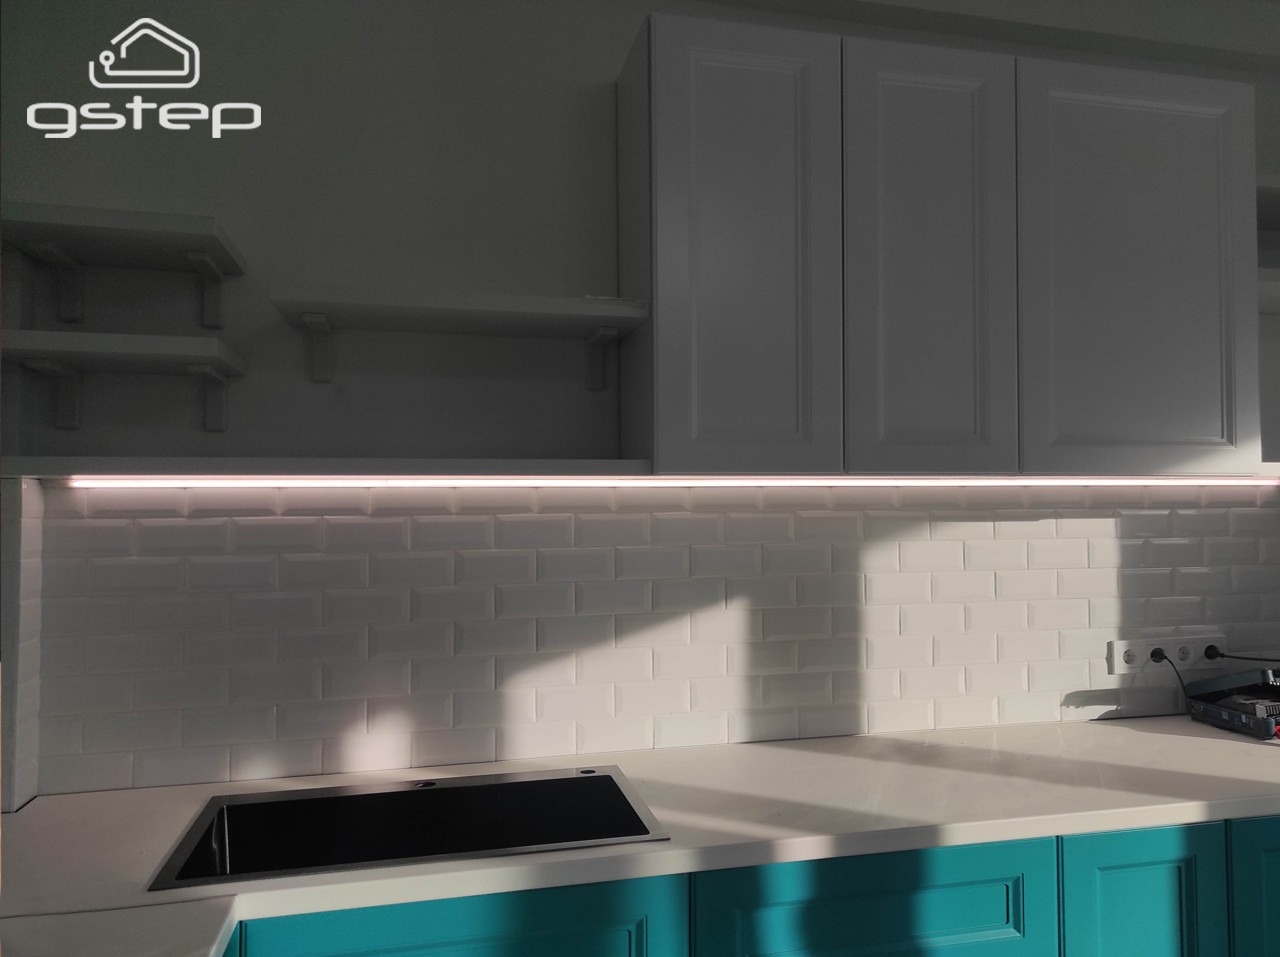 Cенсорная светодиодная подсветка кухни, столешницы, мебели Gstep UCL 100 см  Теплый белый 3000К, фото 1